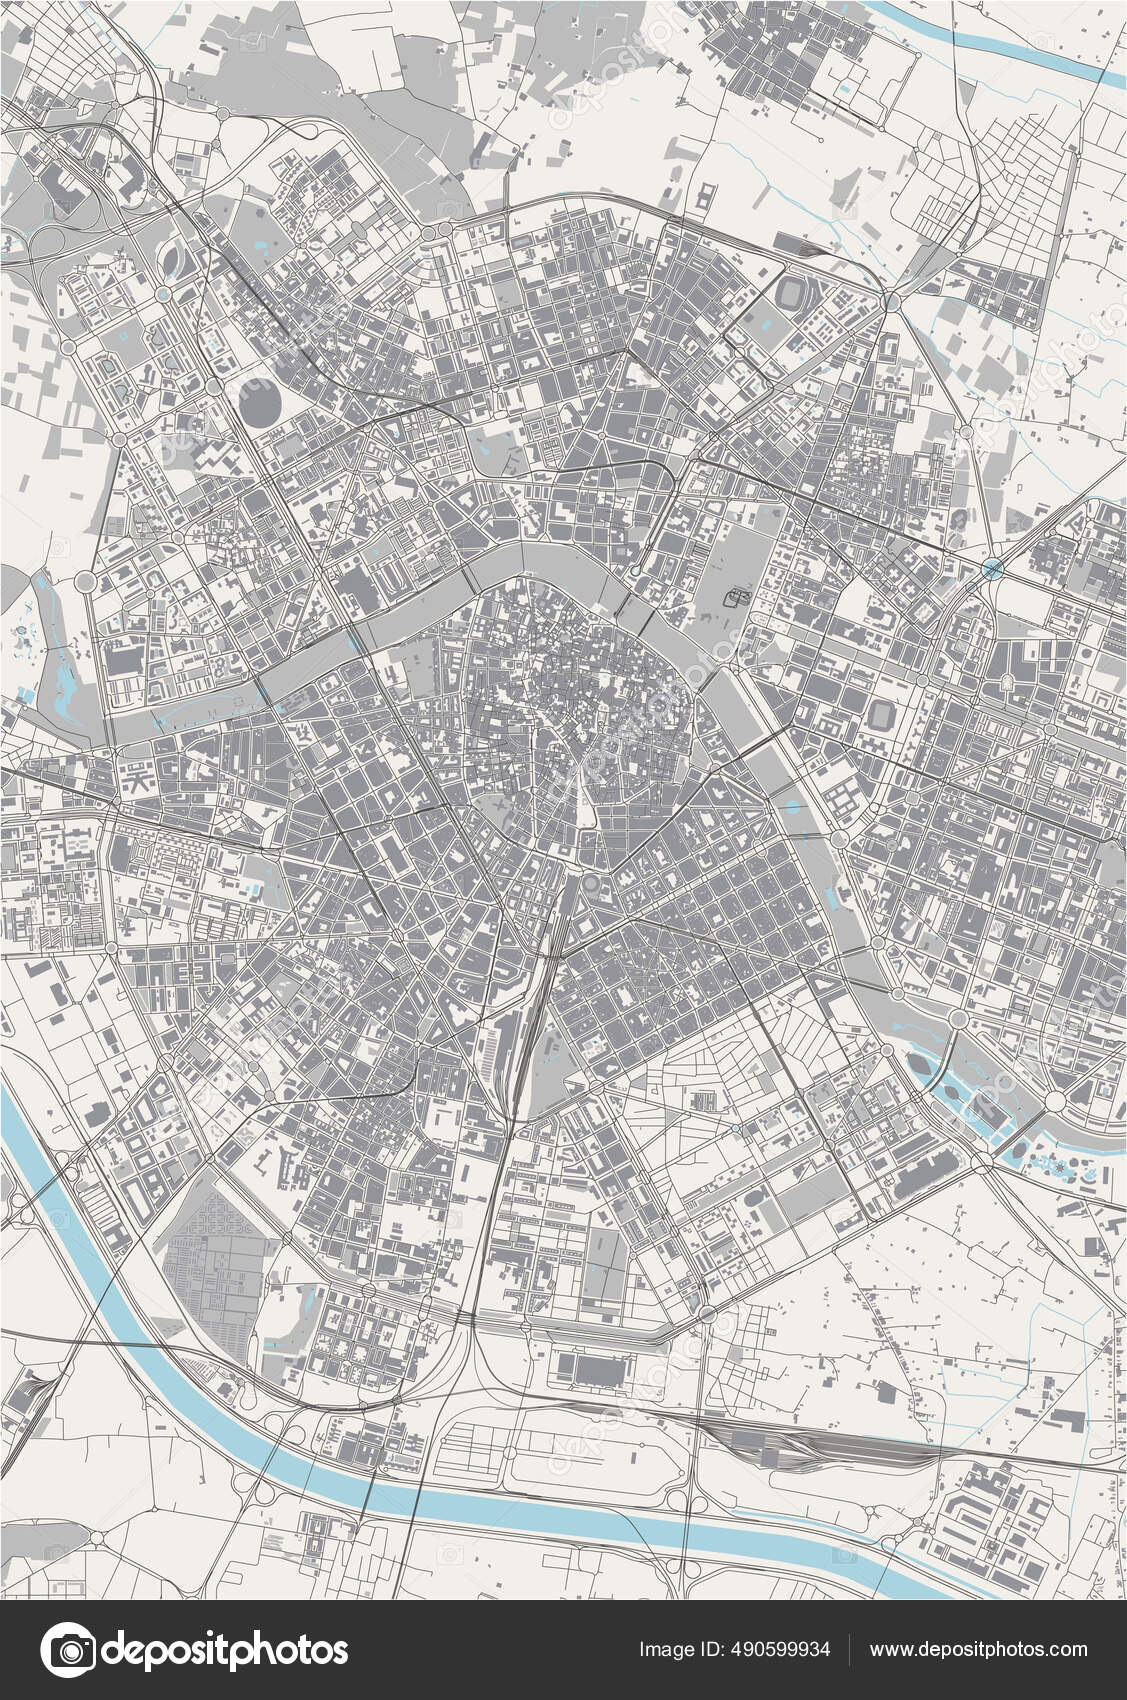 Valencia Localização Mapa Encontrar Cidade Mapa Espanha Ilustração Vetorial  imagem vetorial de tupungato© 378744388